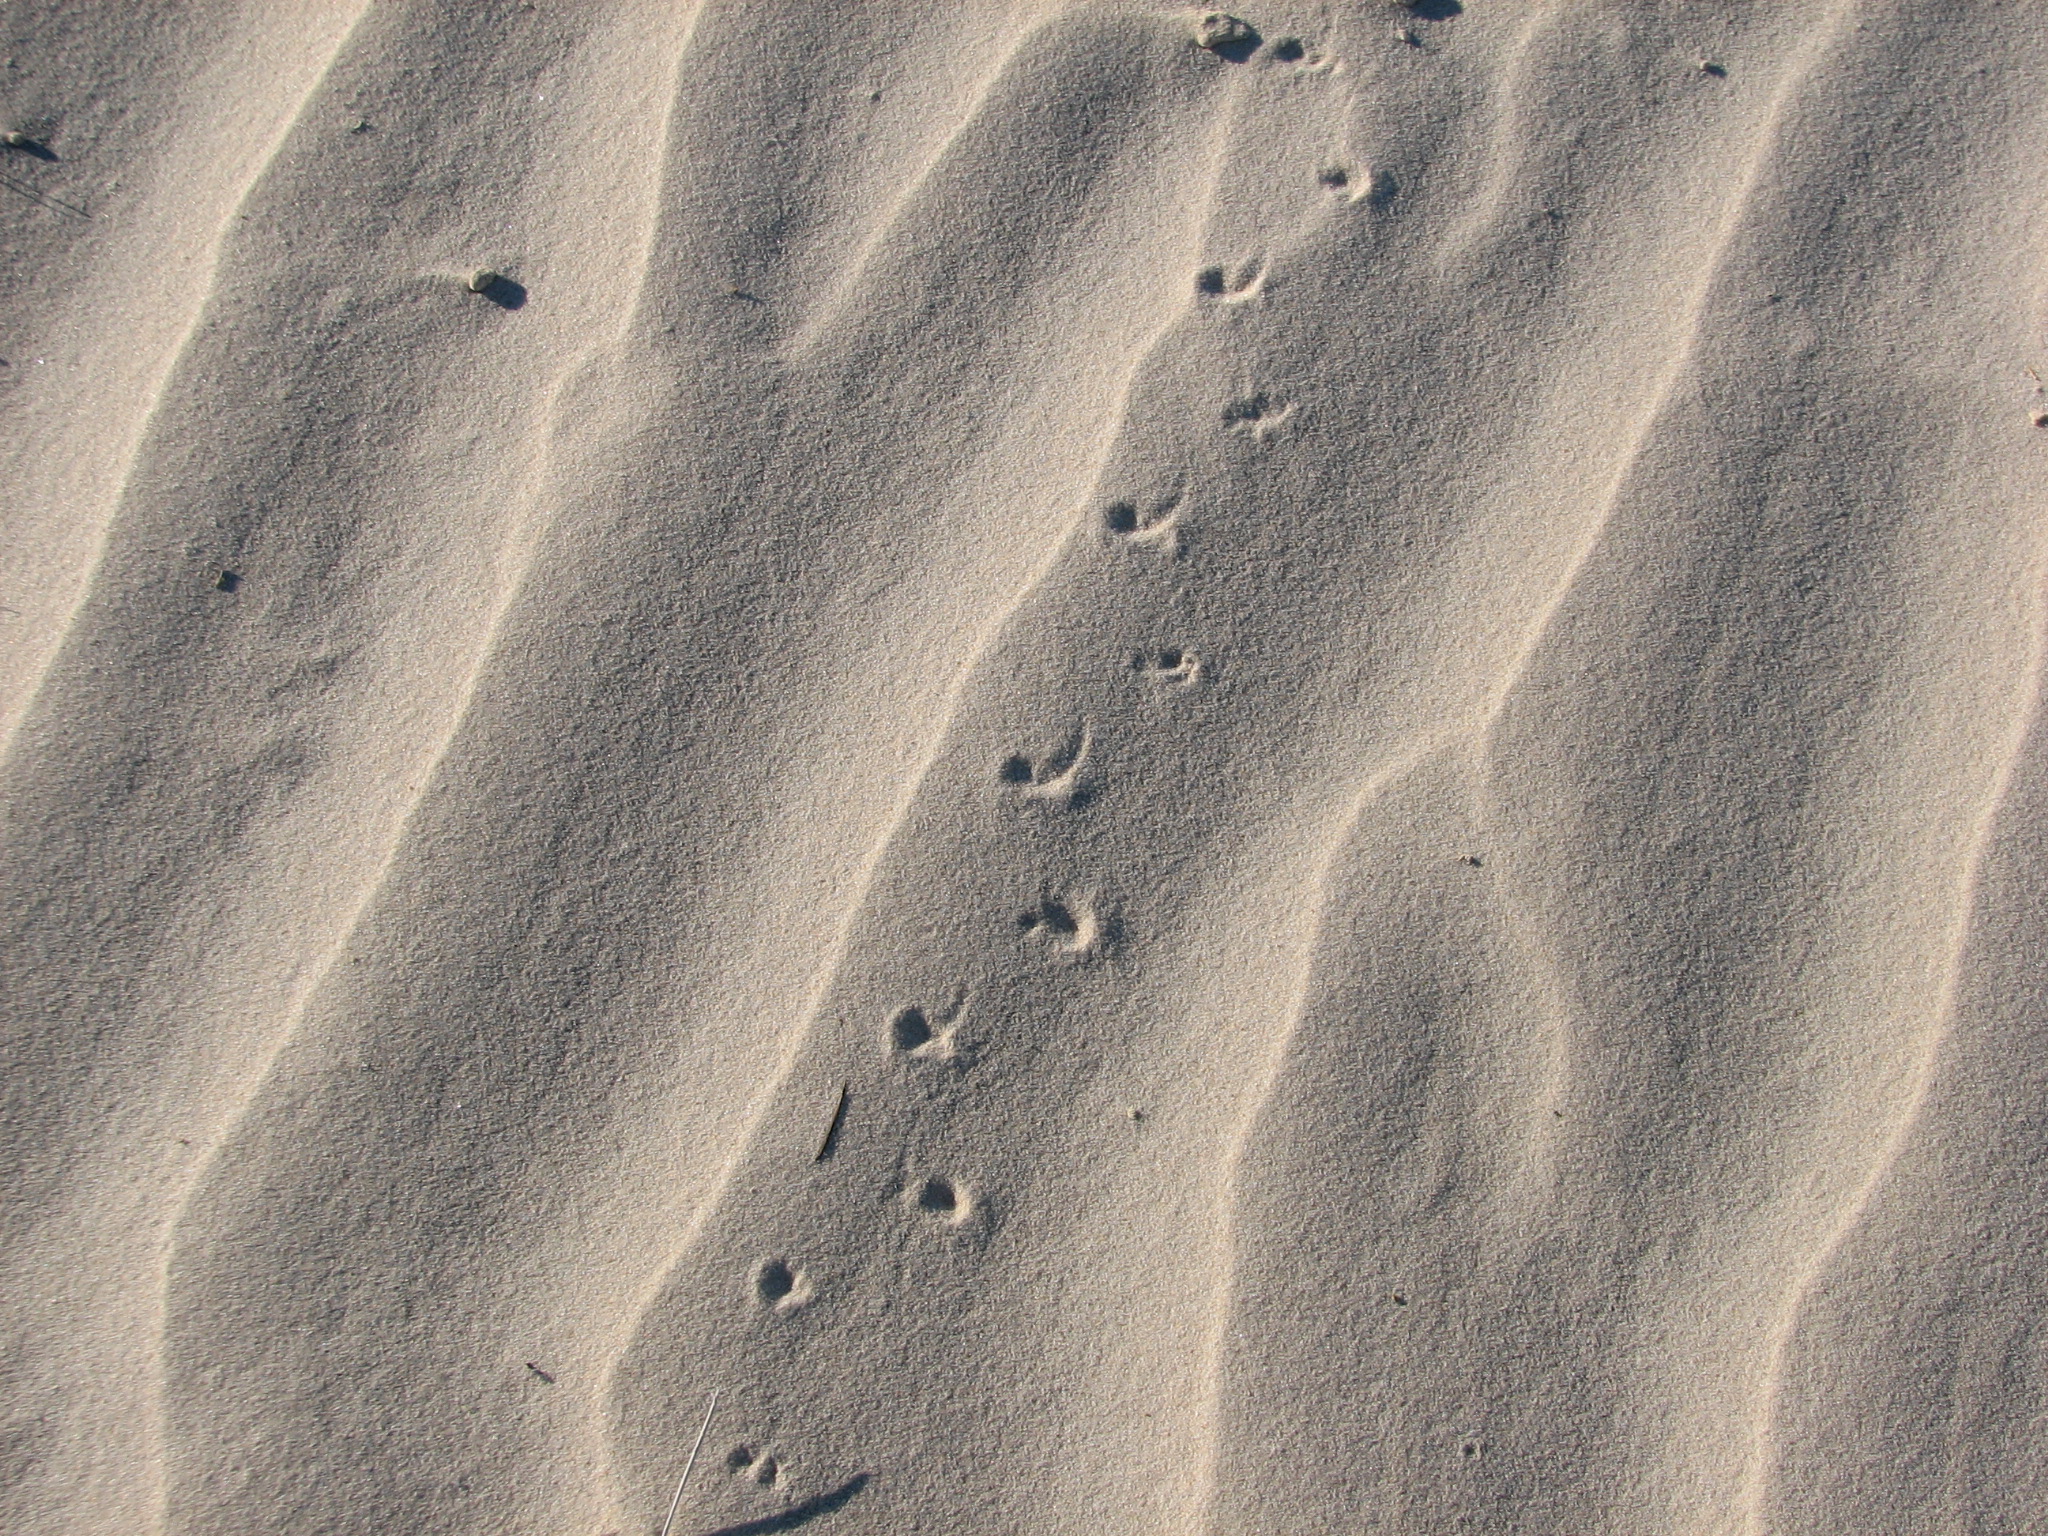 Tracks in the white desert sands.